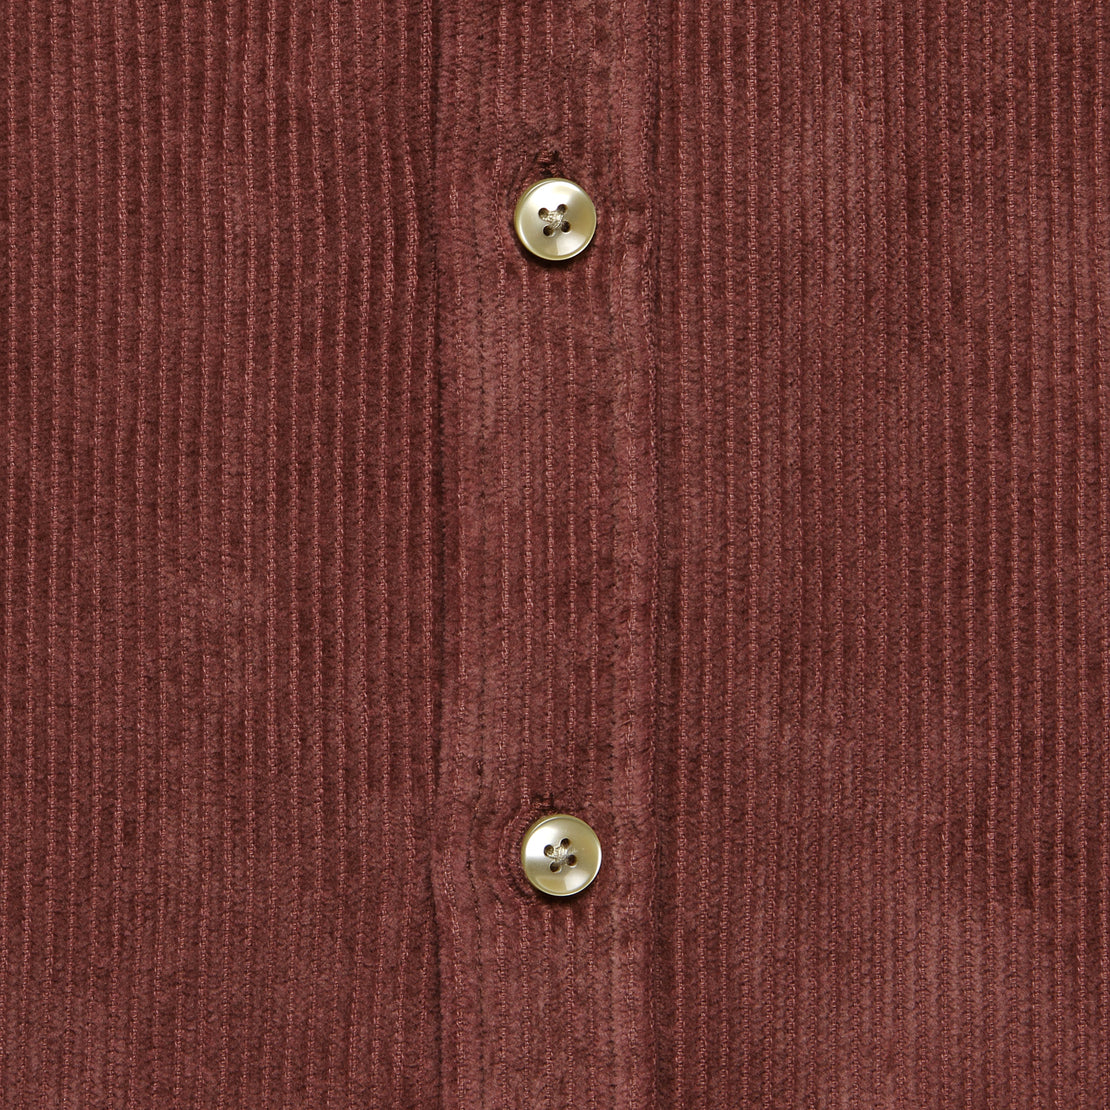 Corduroy Lobo Shirt - Bordeaux - Portuguese Flannel - STAG Provisions - Tops - L/S Woven - Corduroy